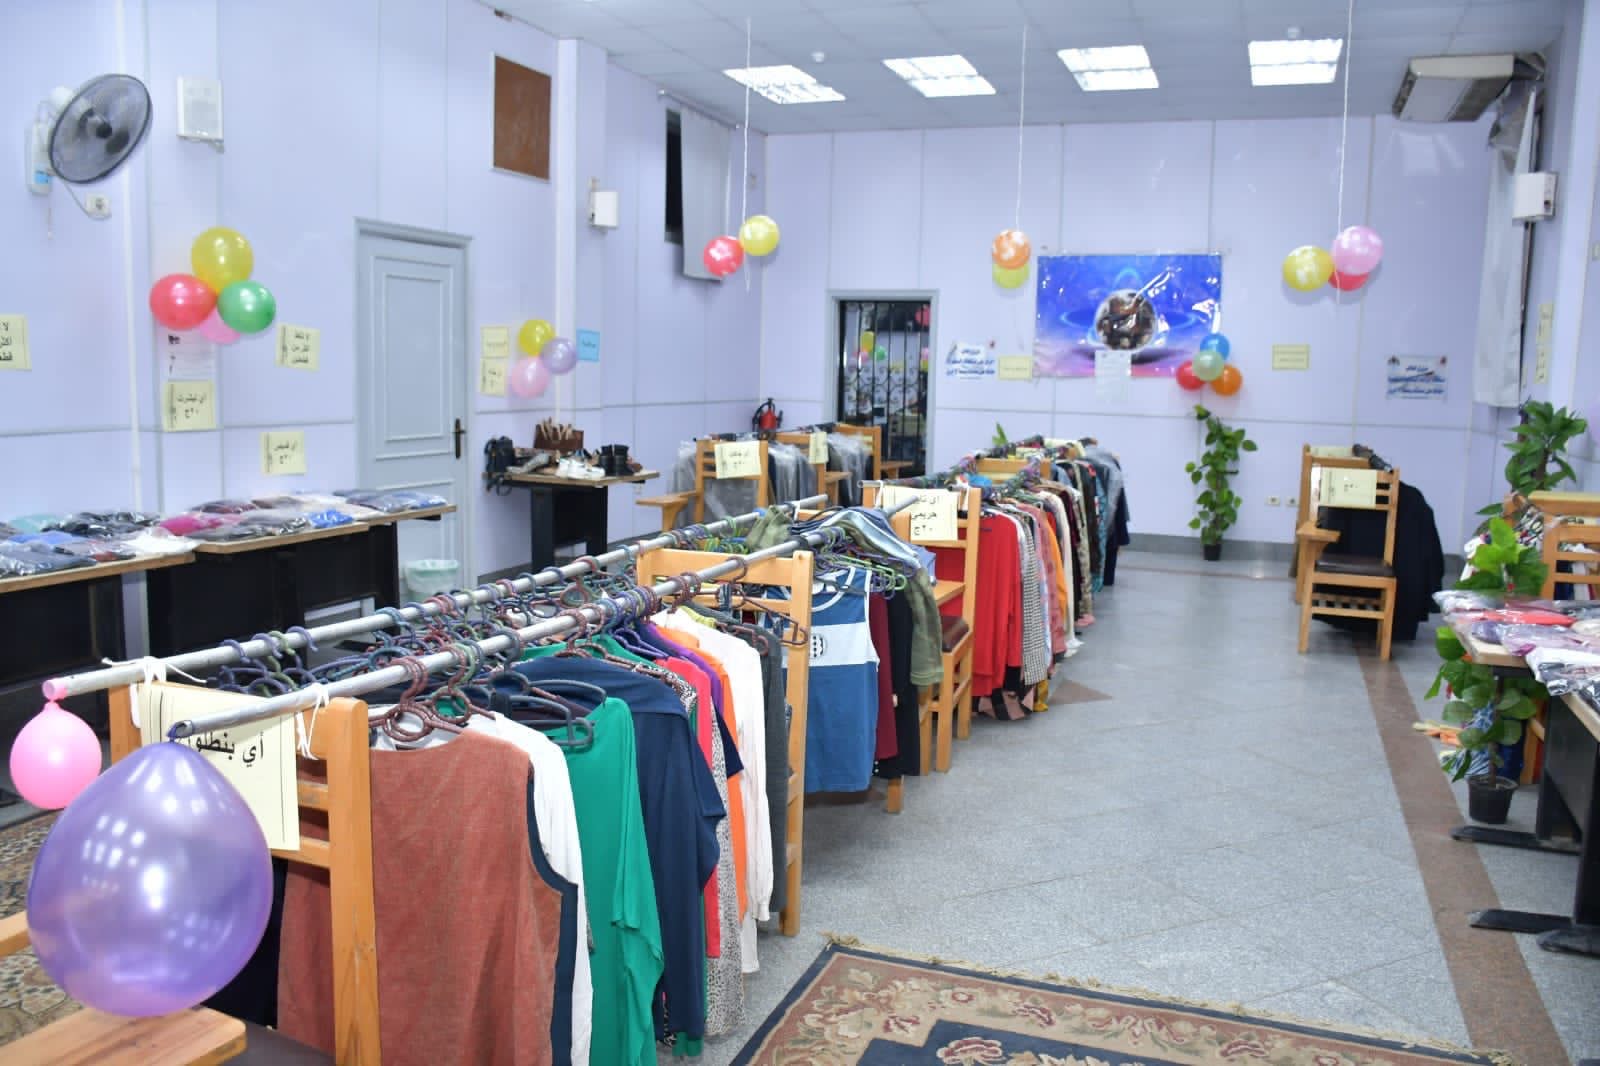 كليات جامعة القاهرة تنظم معرض ملابس مجاني للطلاب بمناسبة عيد الفطر  (1)